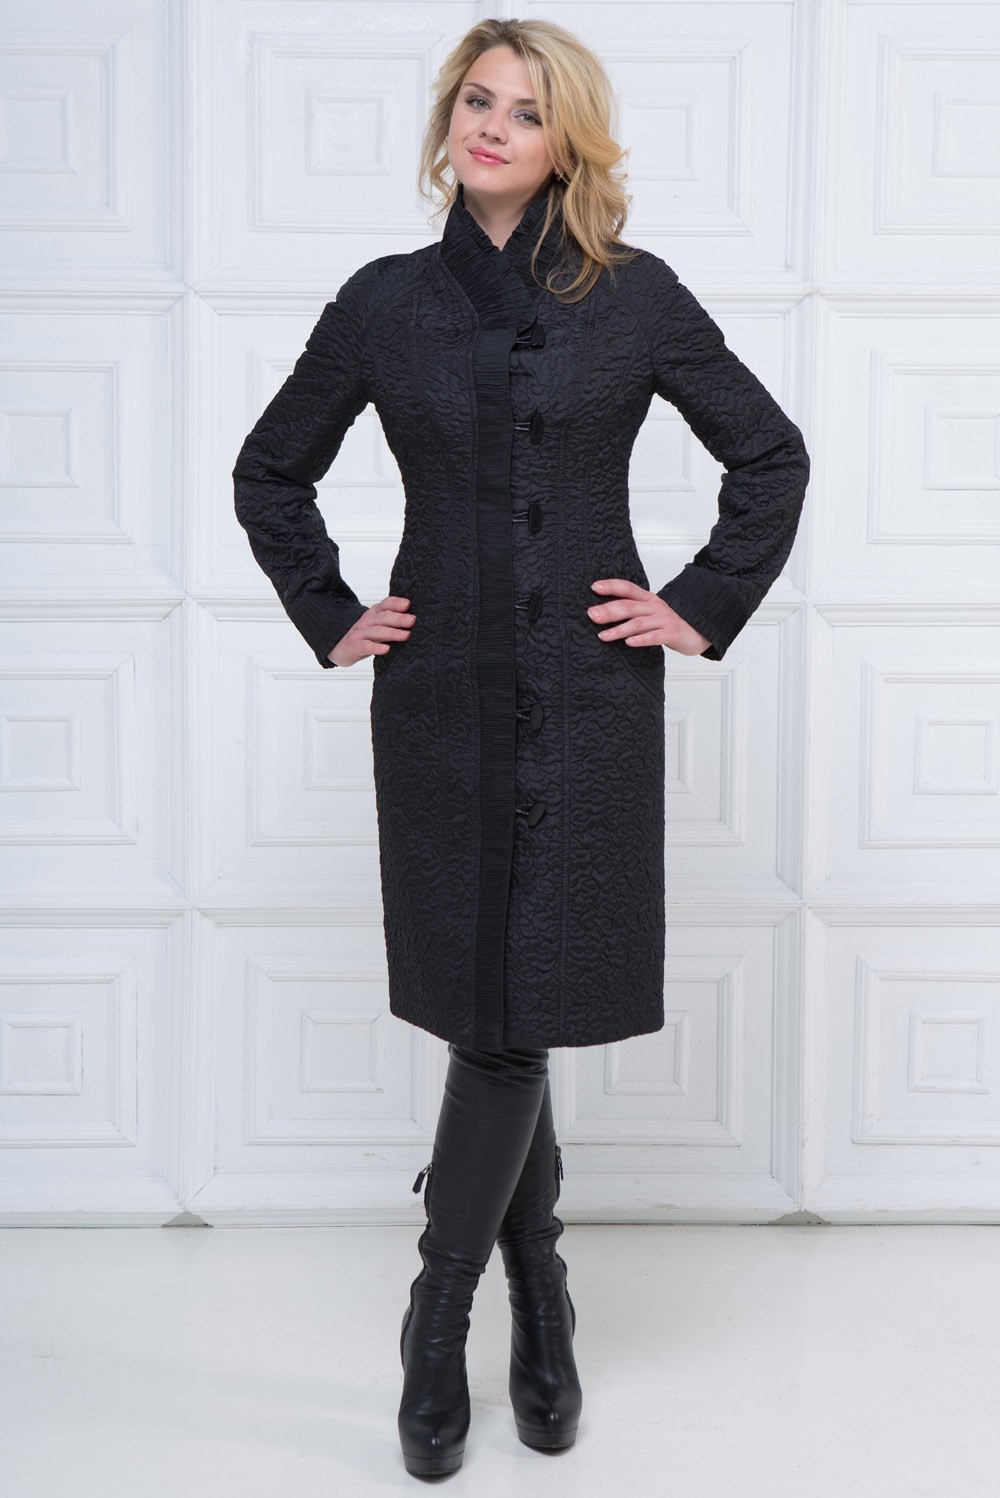 Фабрика демисезонного пальто. Модель 2050 ВЭШ пальто. Женское пальто. Пальто женское демисезонное. Стёганое пальто женское демисезонное.